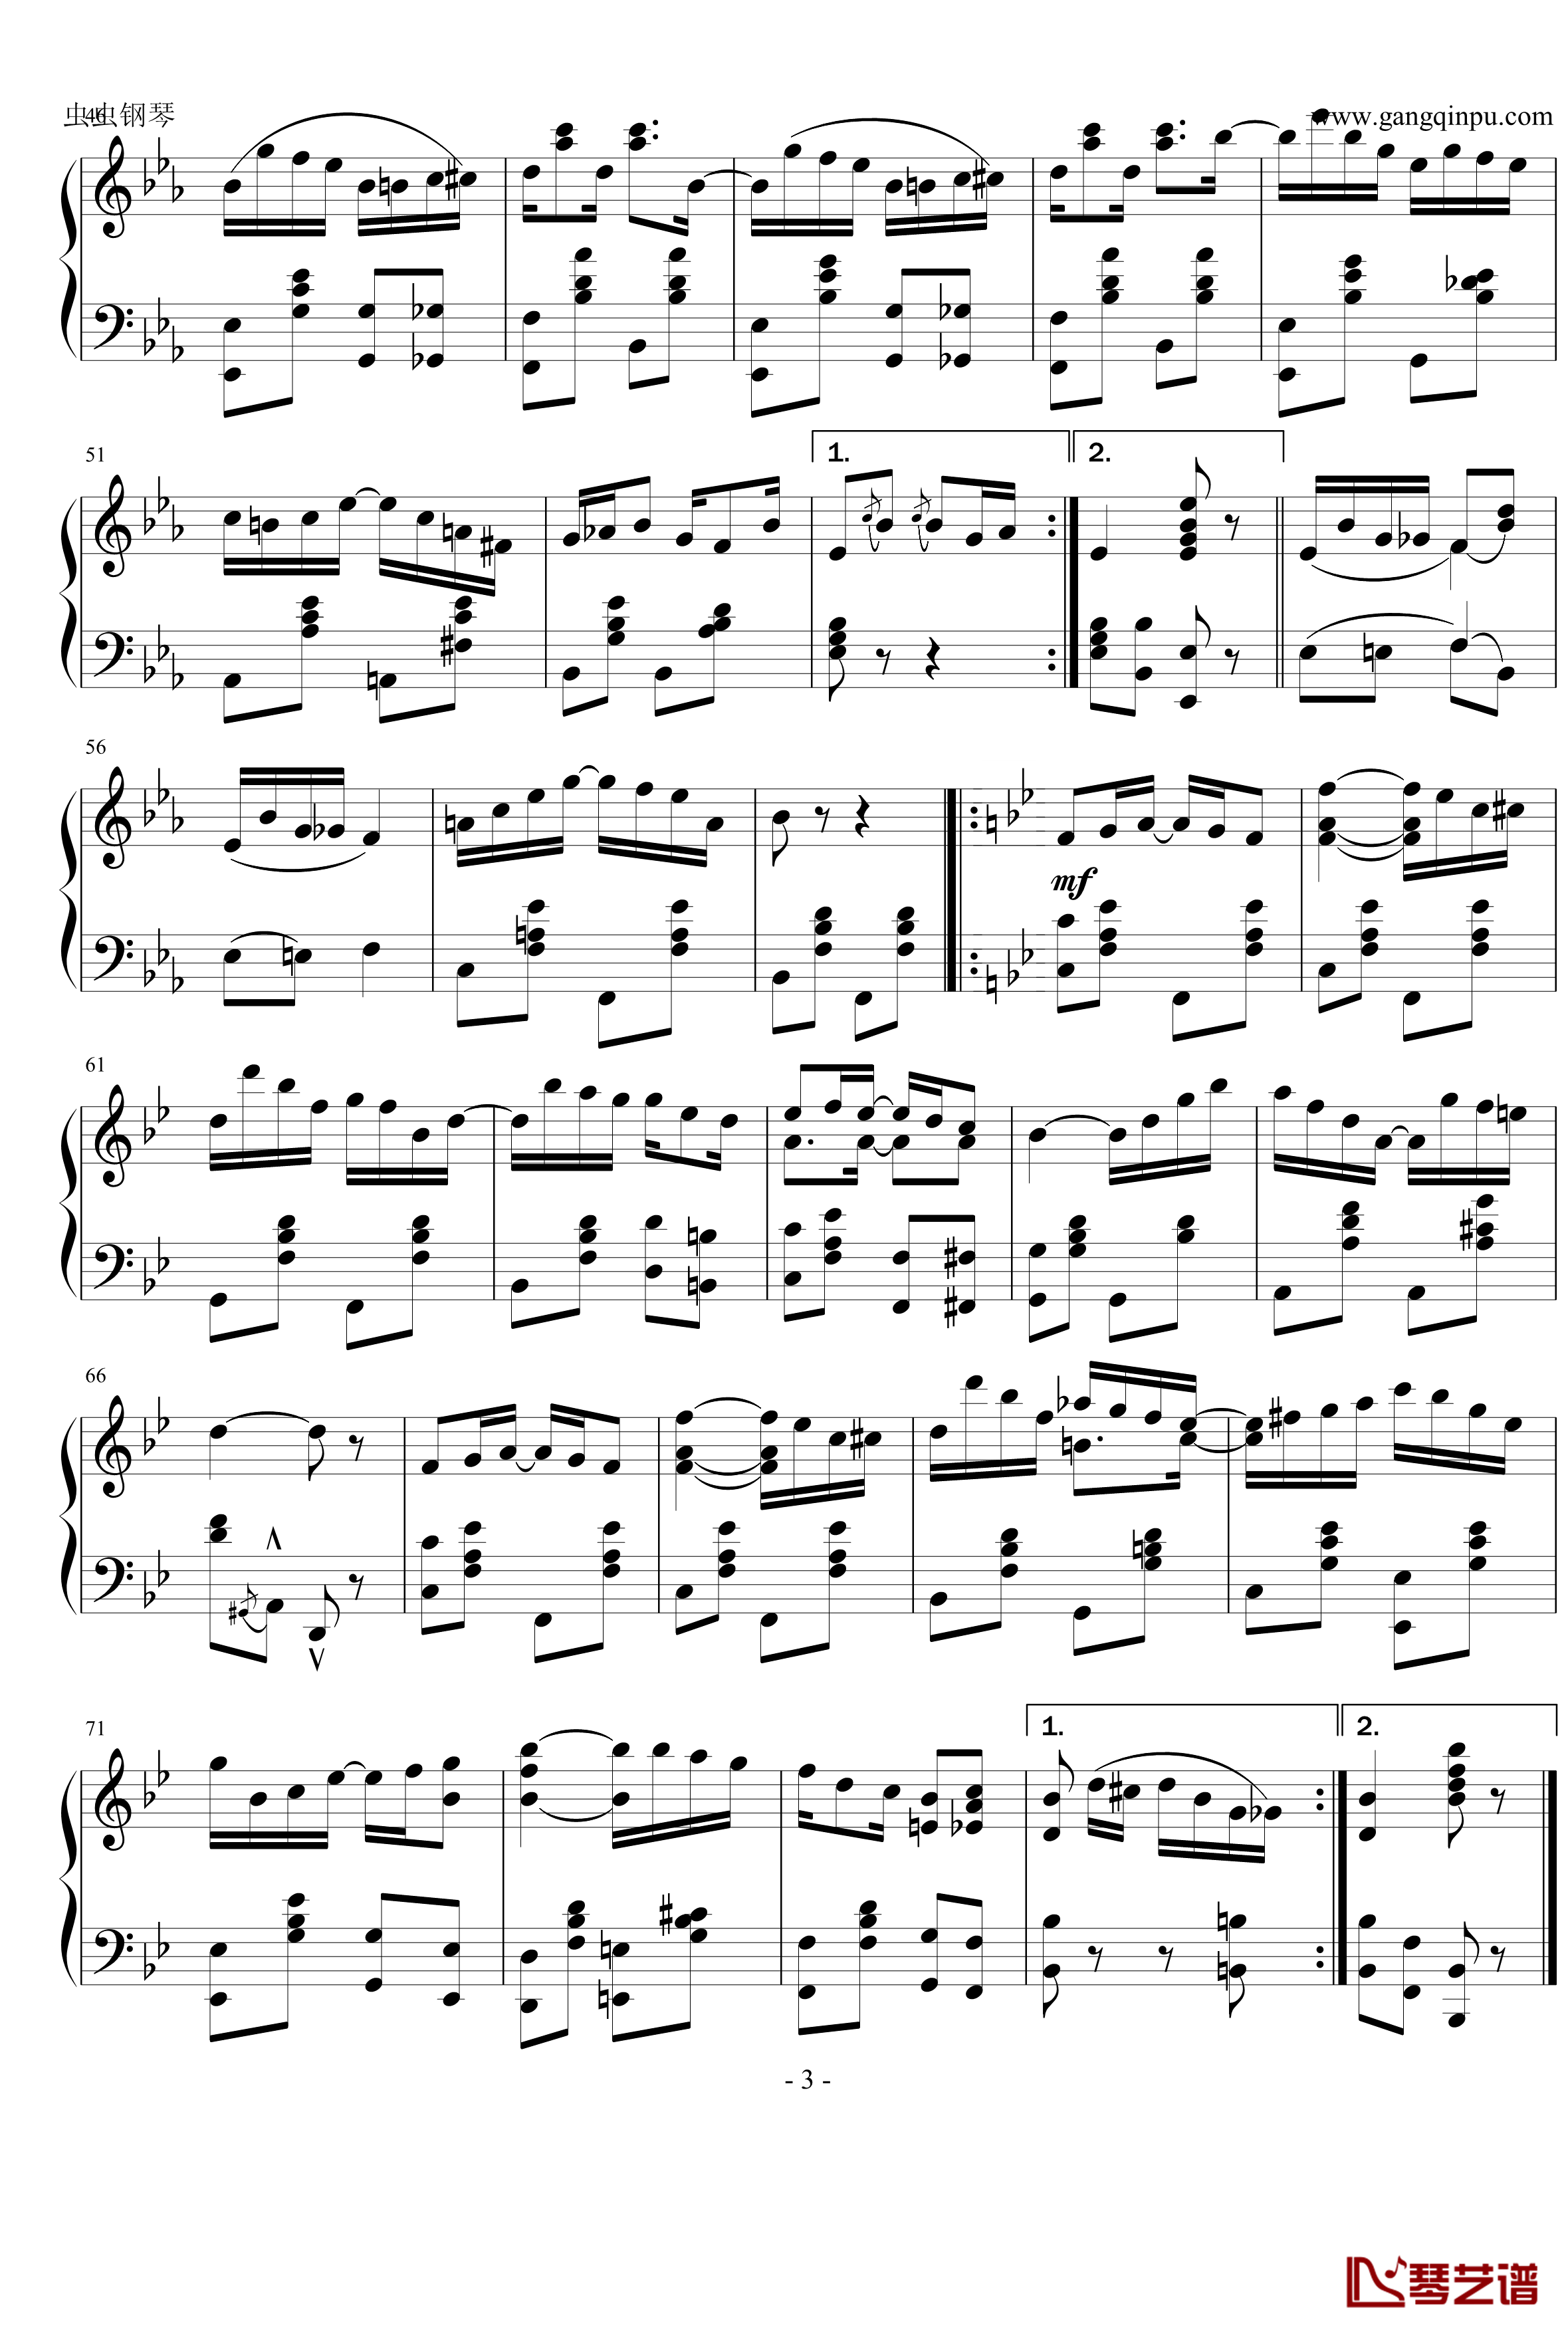 棕榈叶拉格钢琴谱-乔普林3